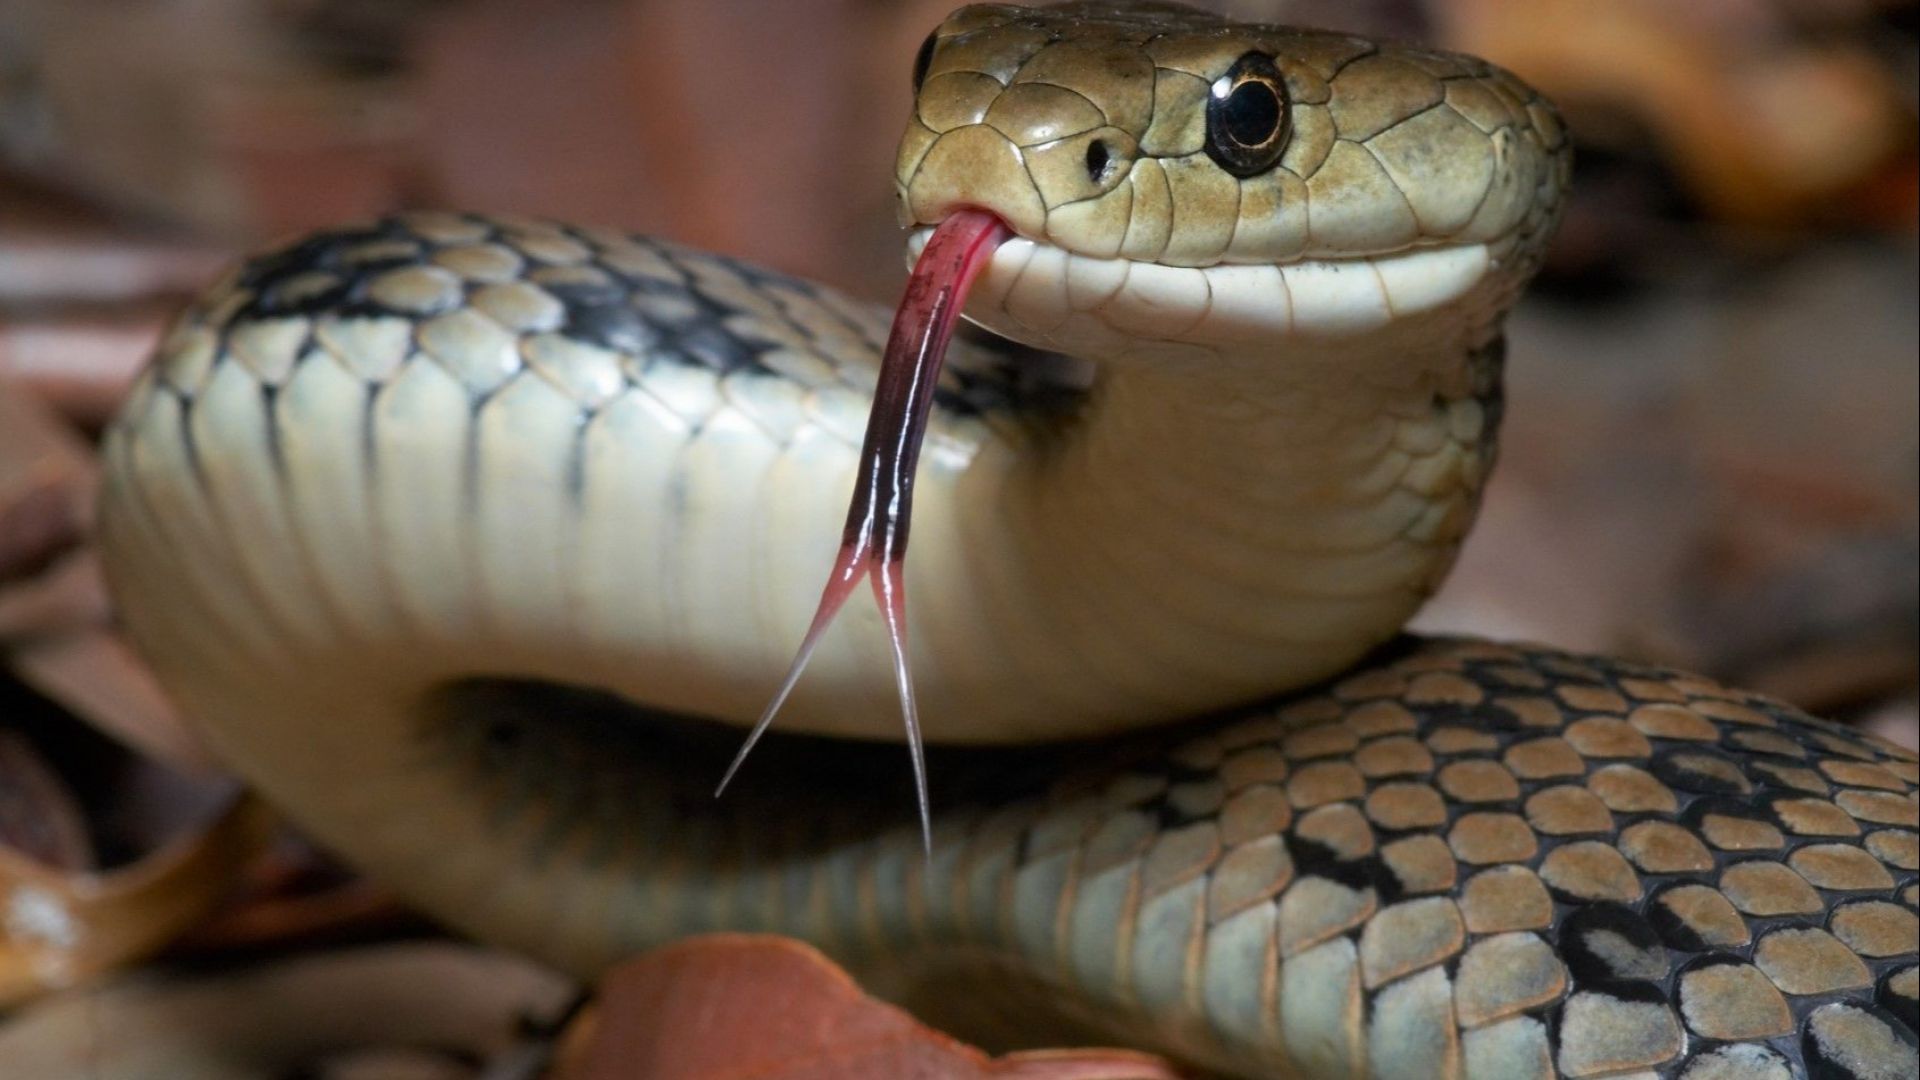 Община Варна нае ловец на змии заради зачестили появи на влечуги в града